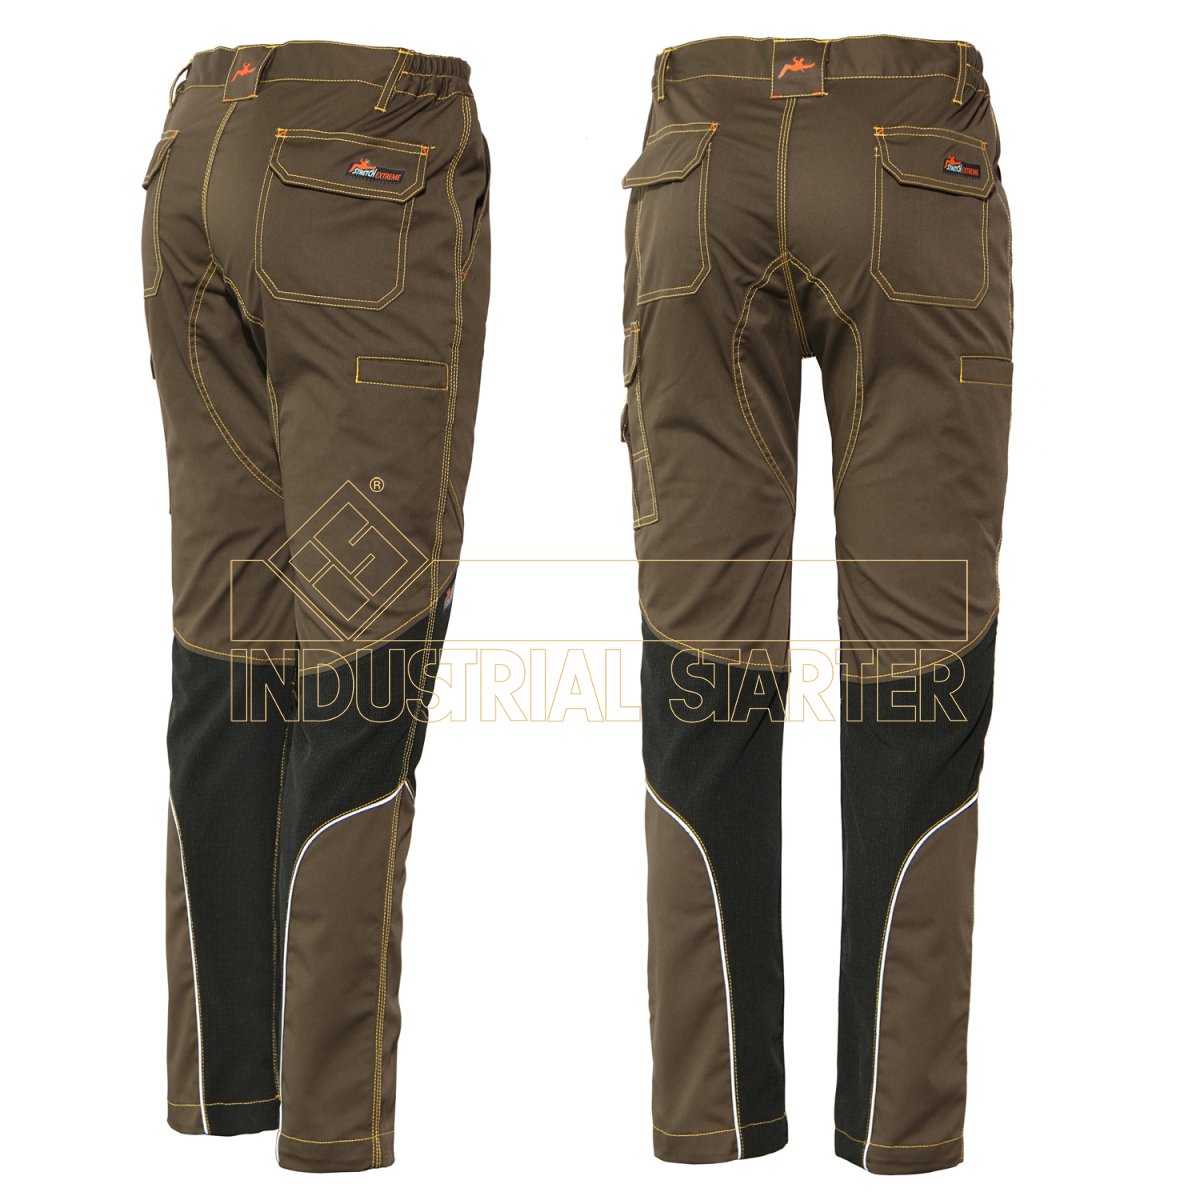 Pantalon issa stretch jeans miner reforzado talla s-xxl talla m